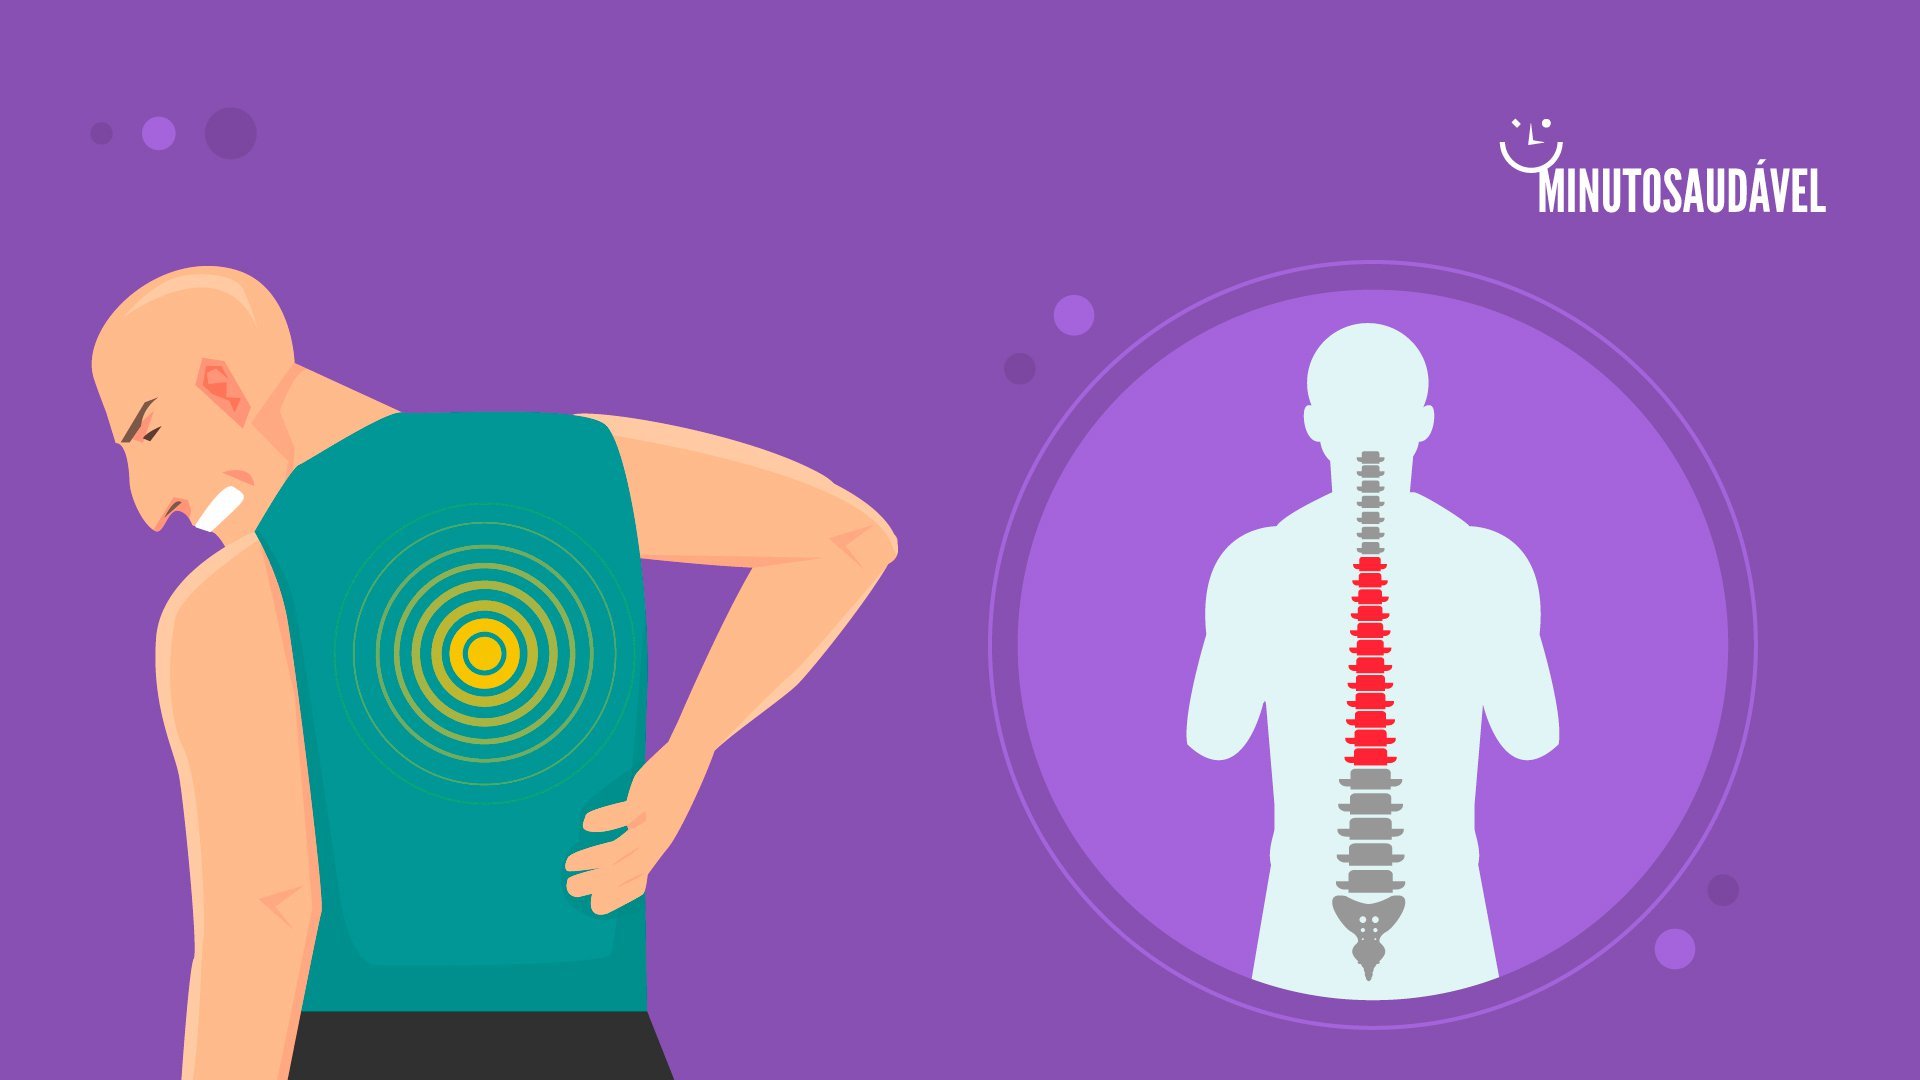 Foto de capa do artigo "Osteoporose na coluna: quais as causas e tratamentos? Tem cura?"